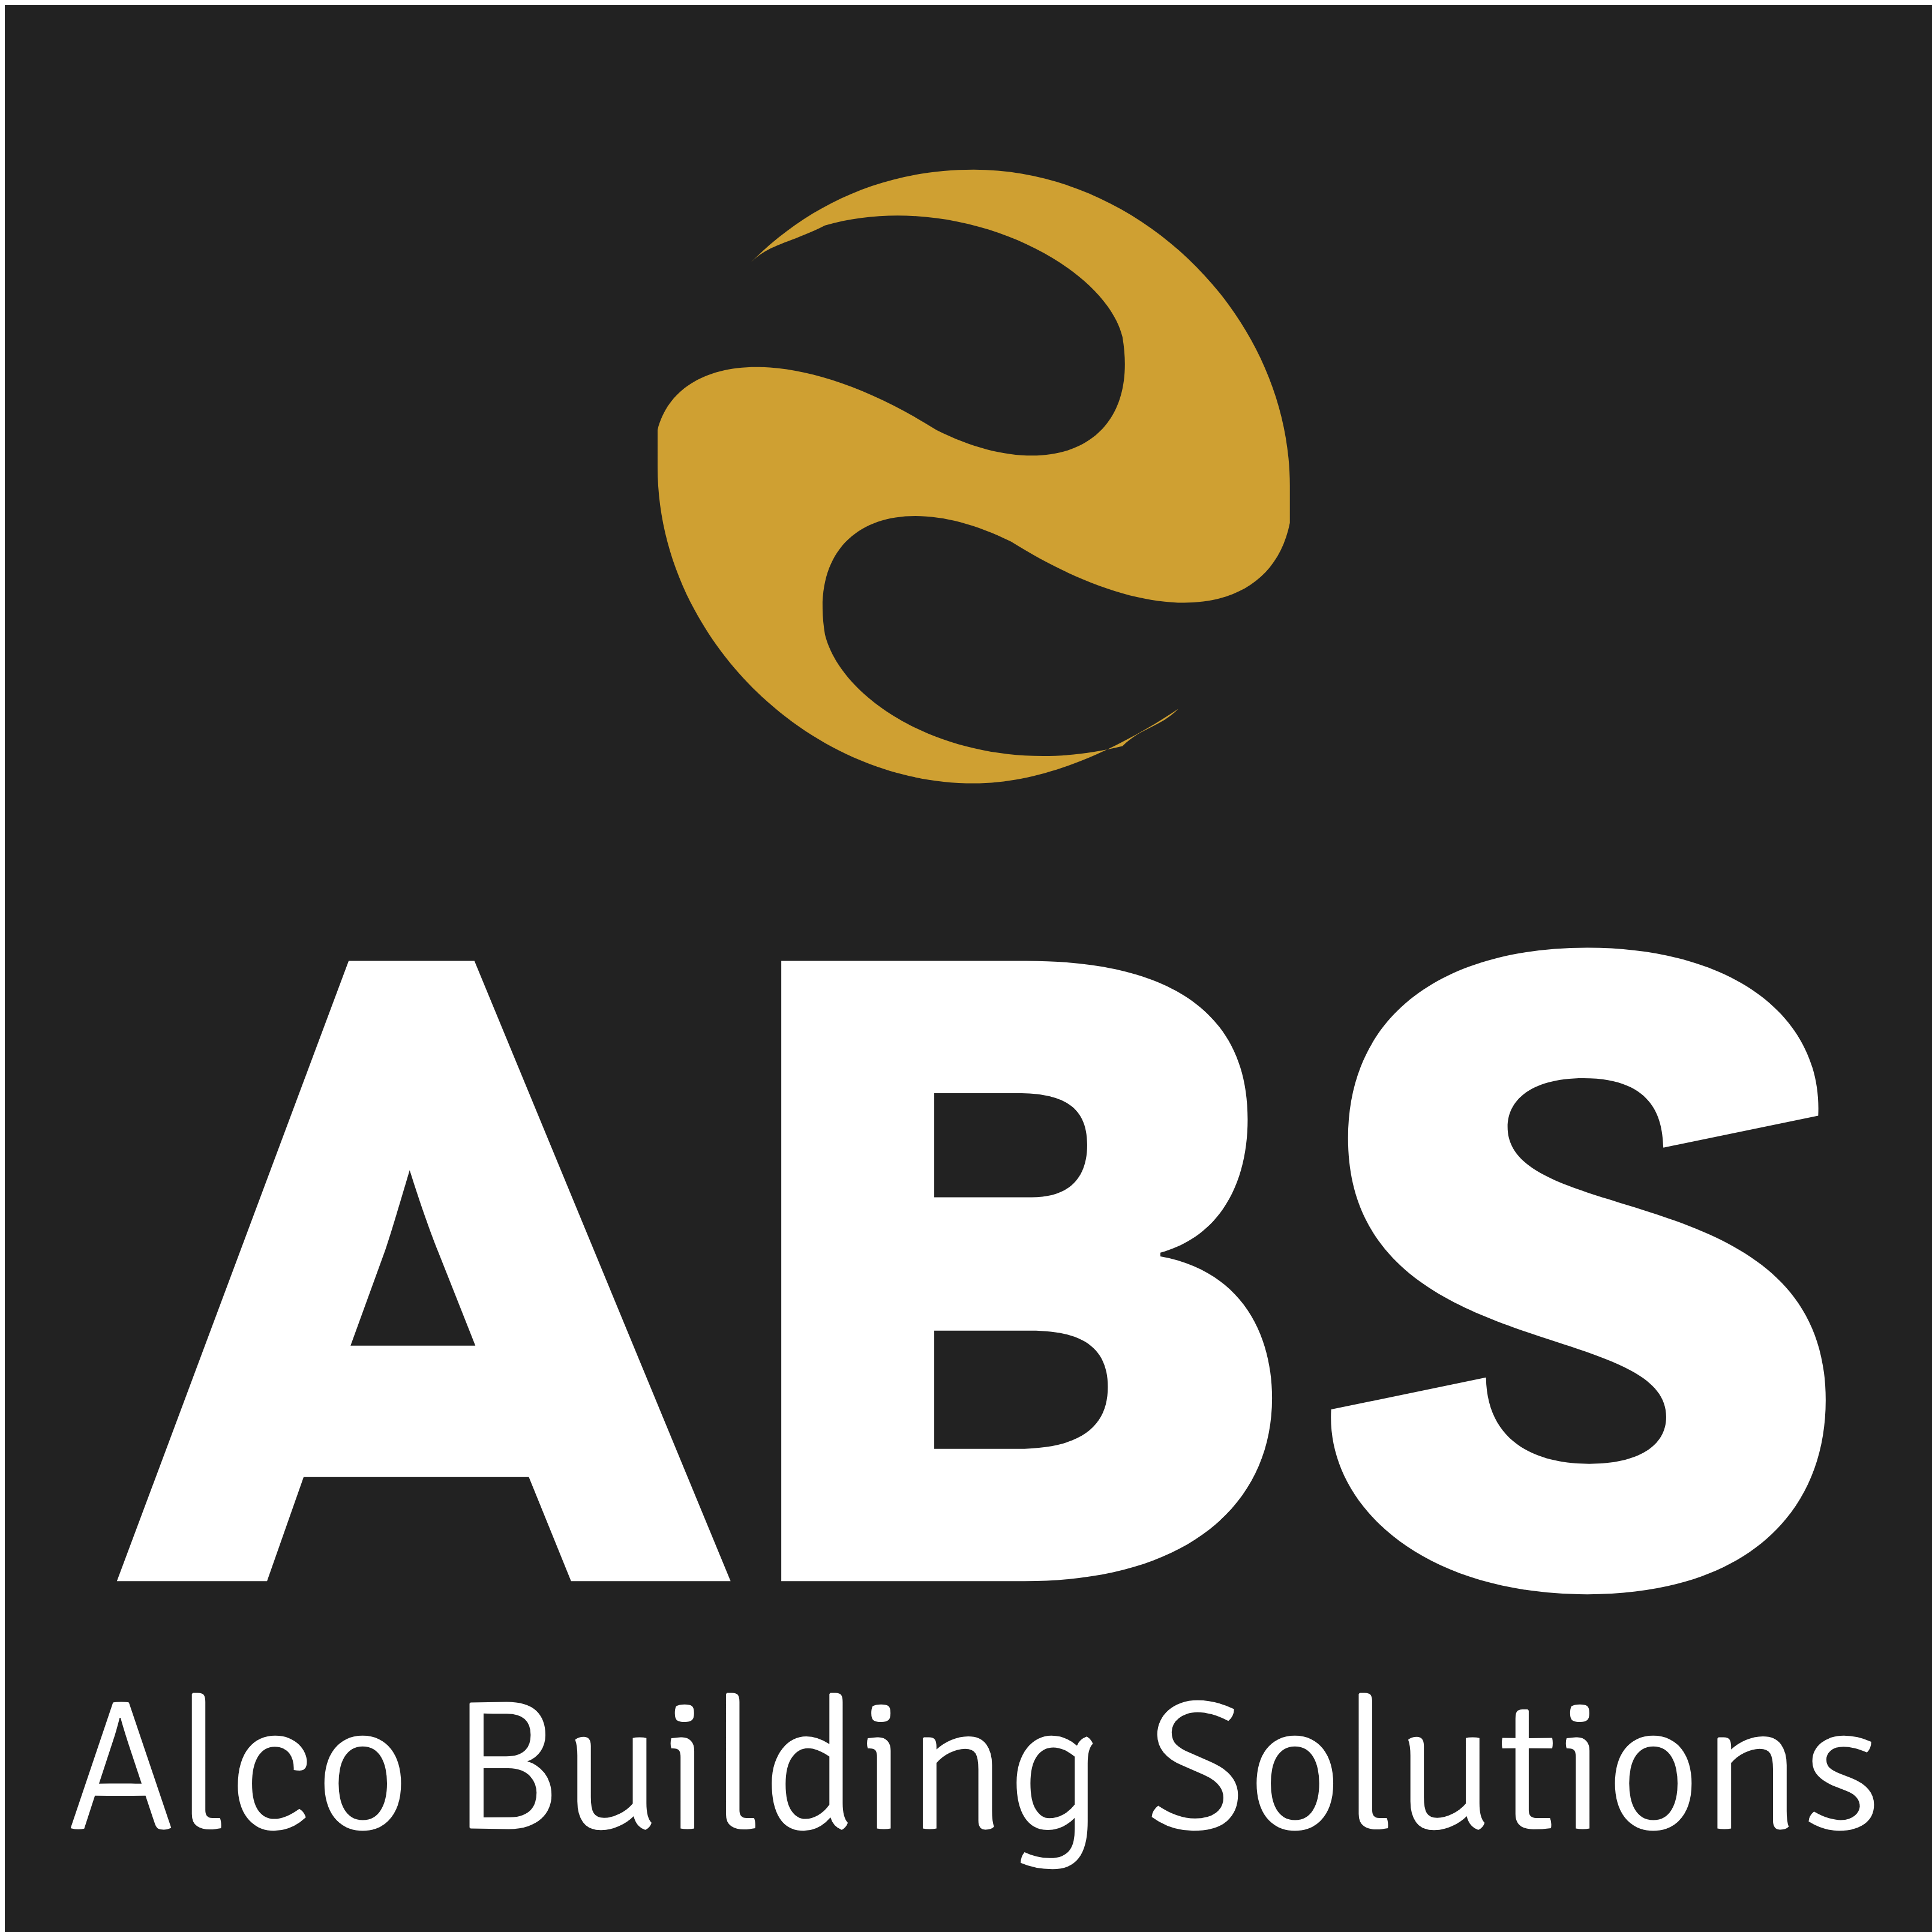 Alco Building Solutions logo